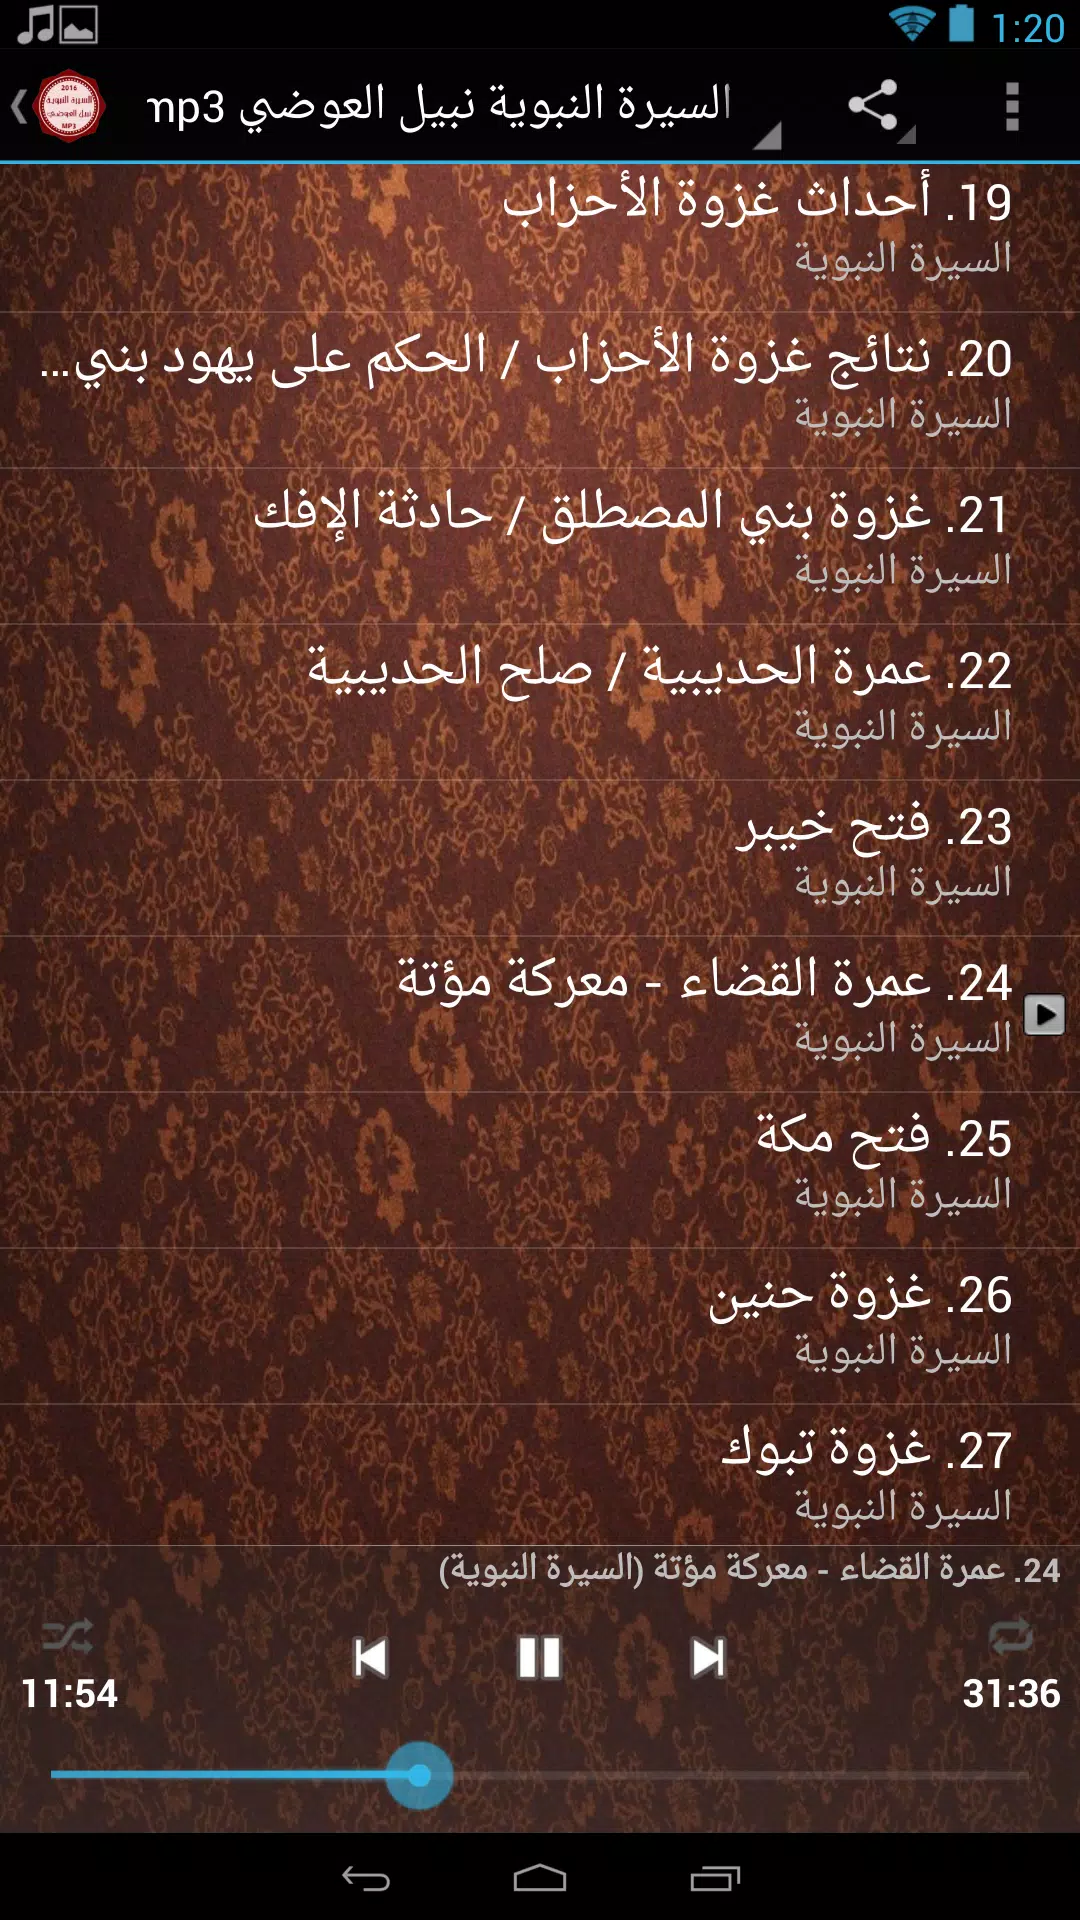 السيرة النبوية نبيل العوضي mp3 for Android - APK Download